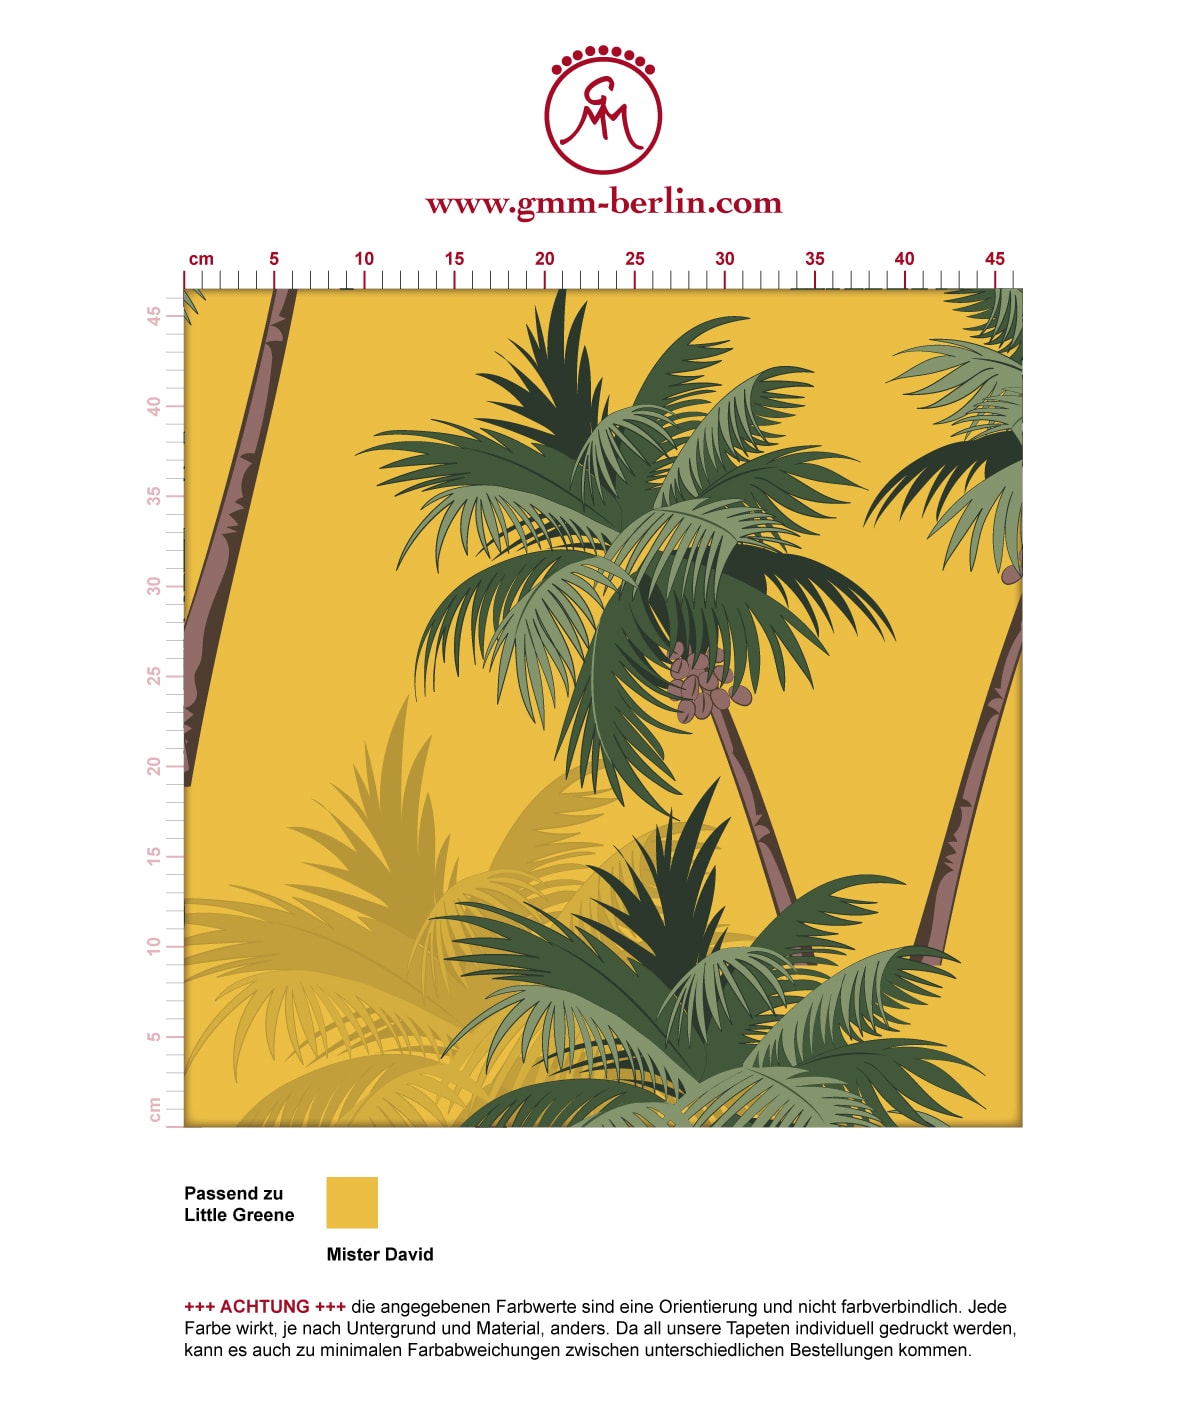 Sonnige, üppige Strand Tapete "im Palmenhain" mit großen Palmen auf gelb angepasst an Little Greene Wandfarben. Aus dem GMM-BERLIN.com Sortiment: Schöne Tapeten in der Farbe: gelb